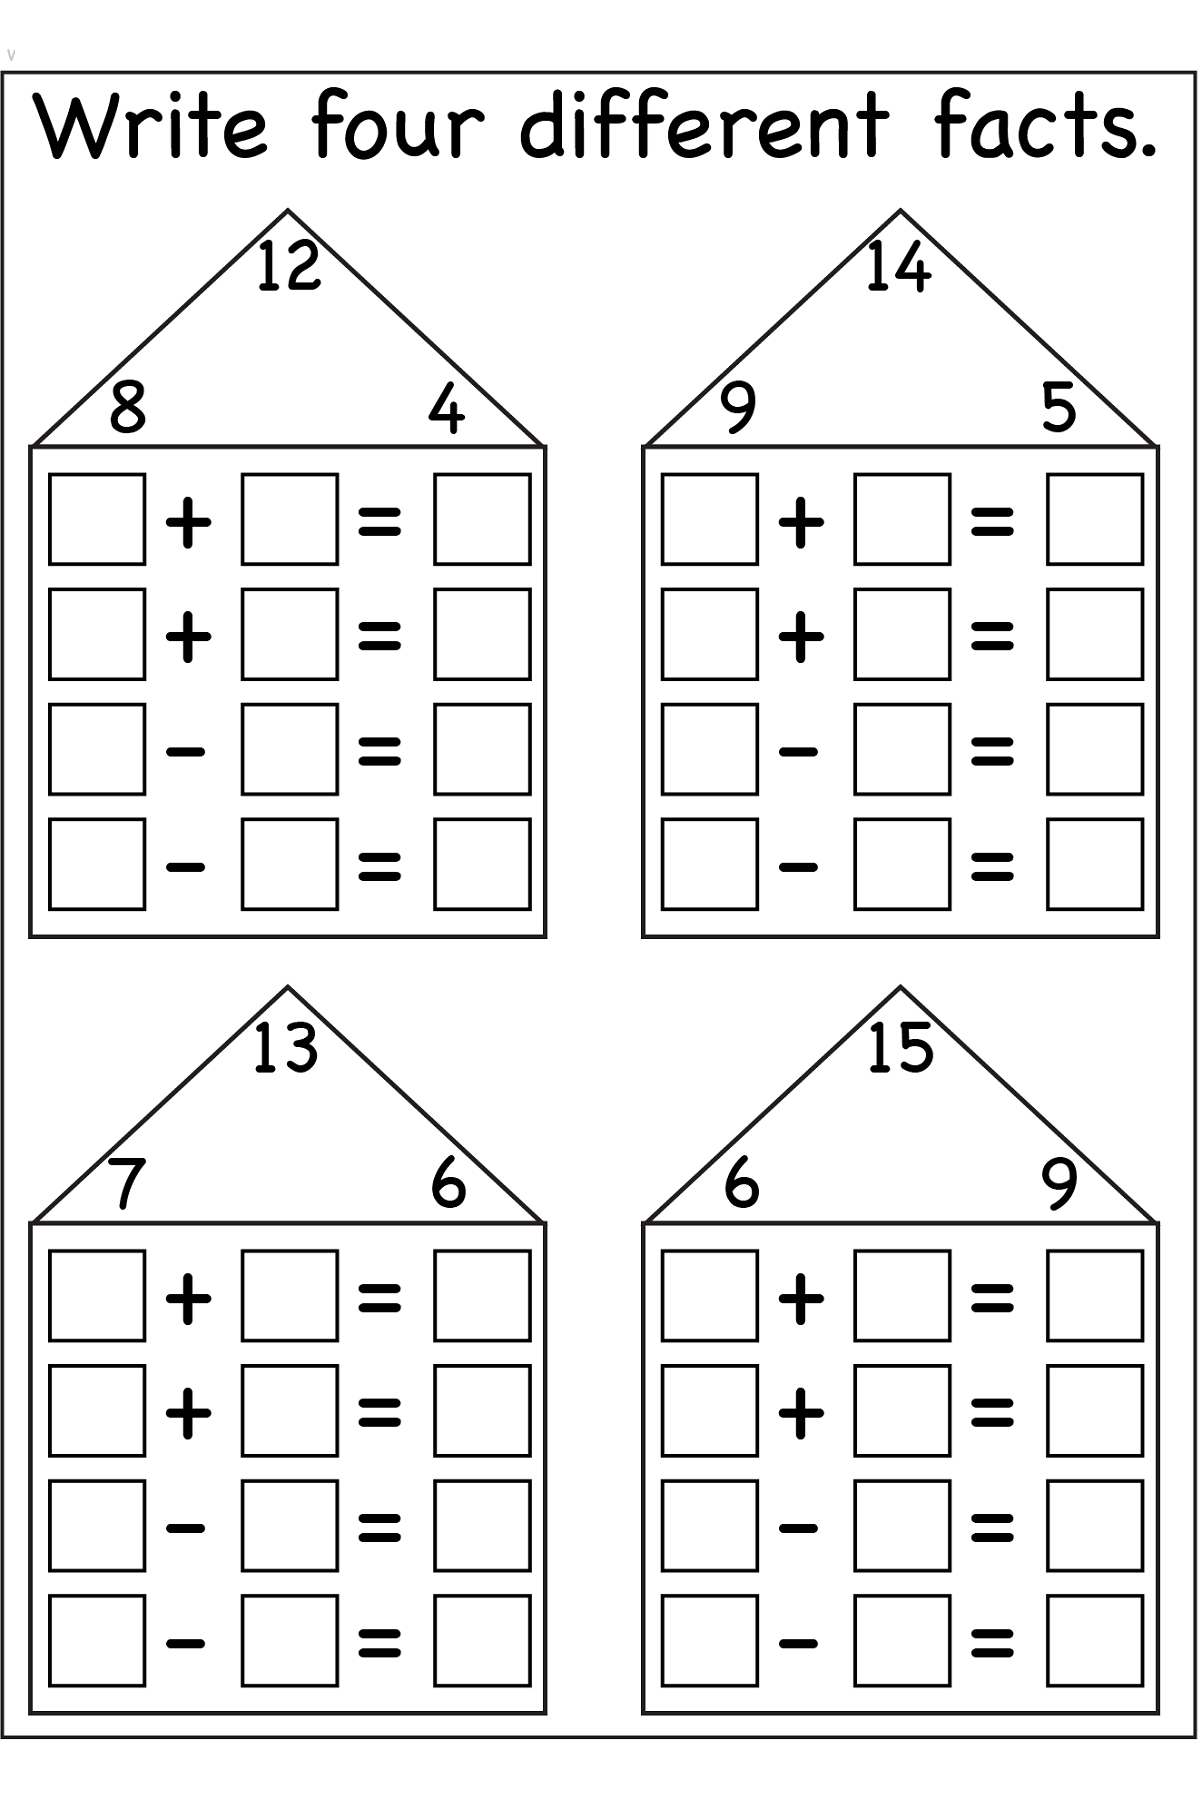 Состав числа до 10 домики тренажер распечатать. Числовые домики состав числа с примерами. Числовые домики для дошкольников. Цифровые домики для первого класса. Домики сложения.